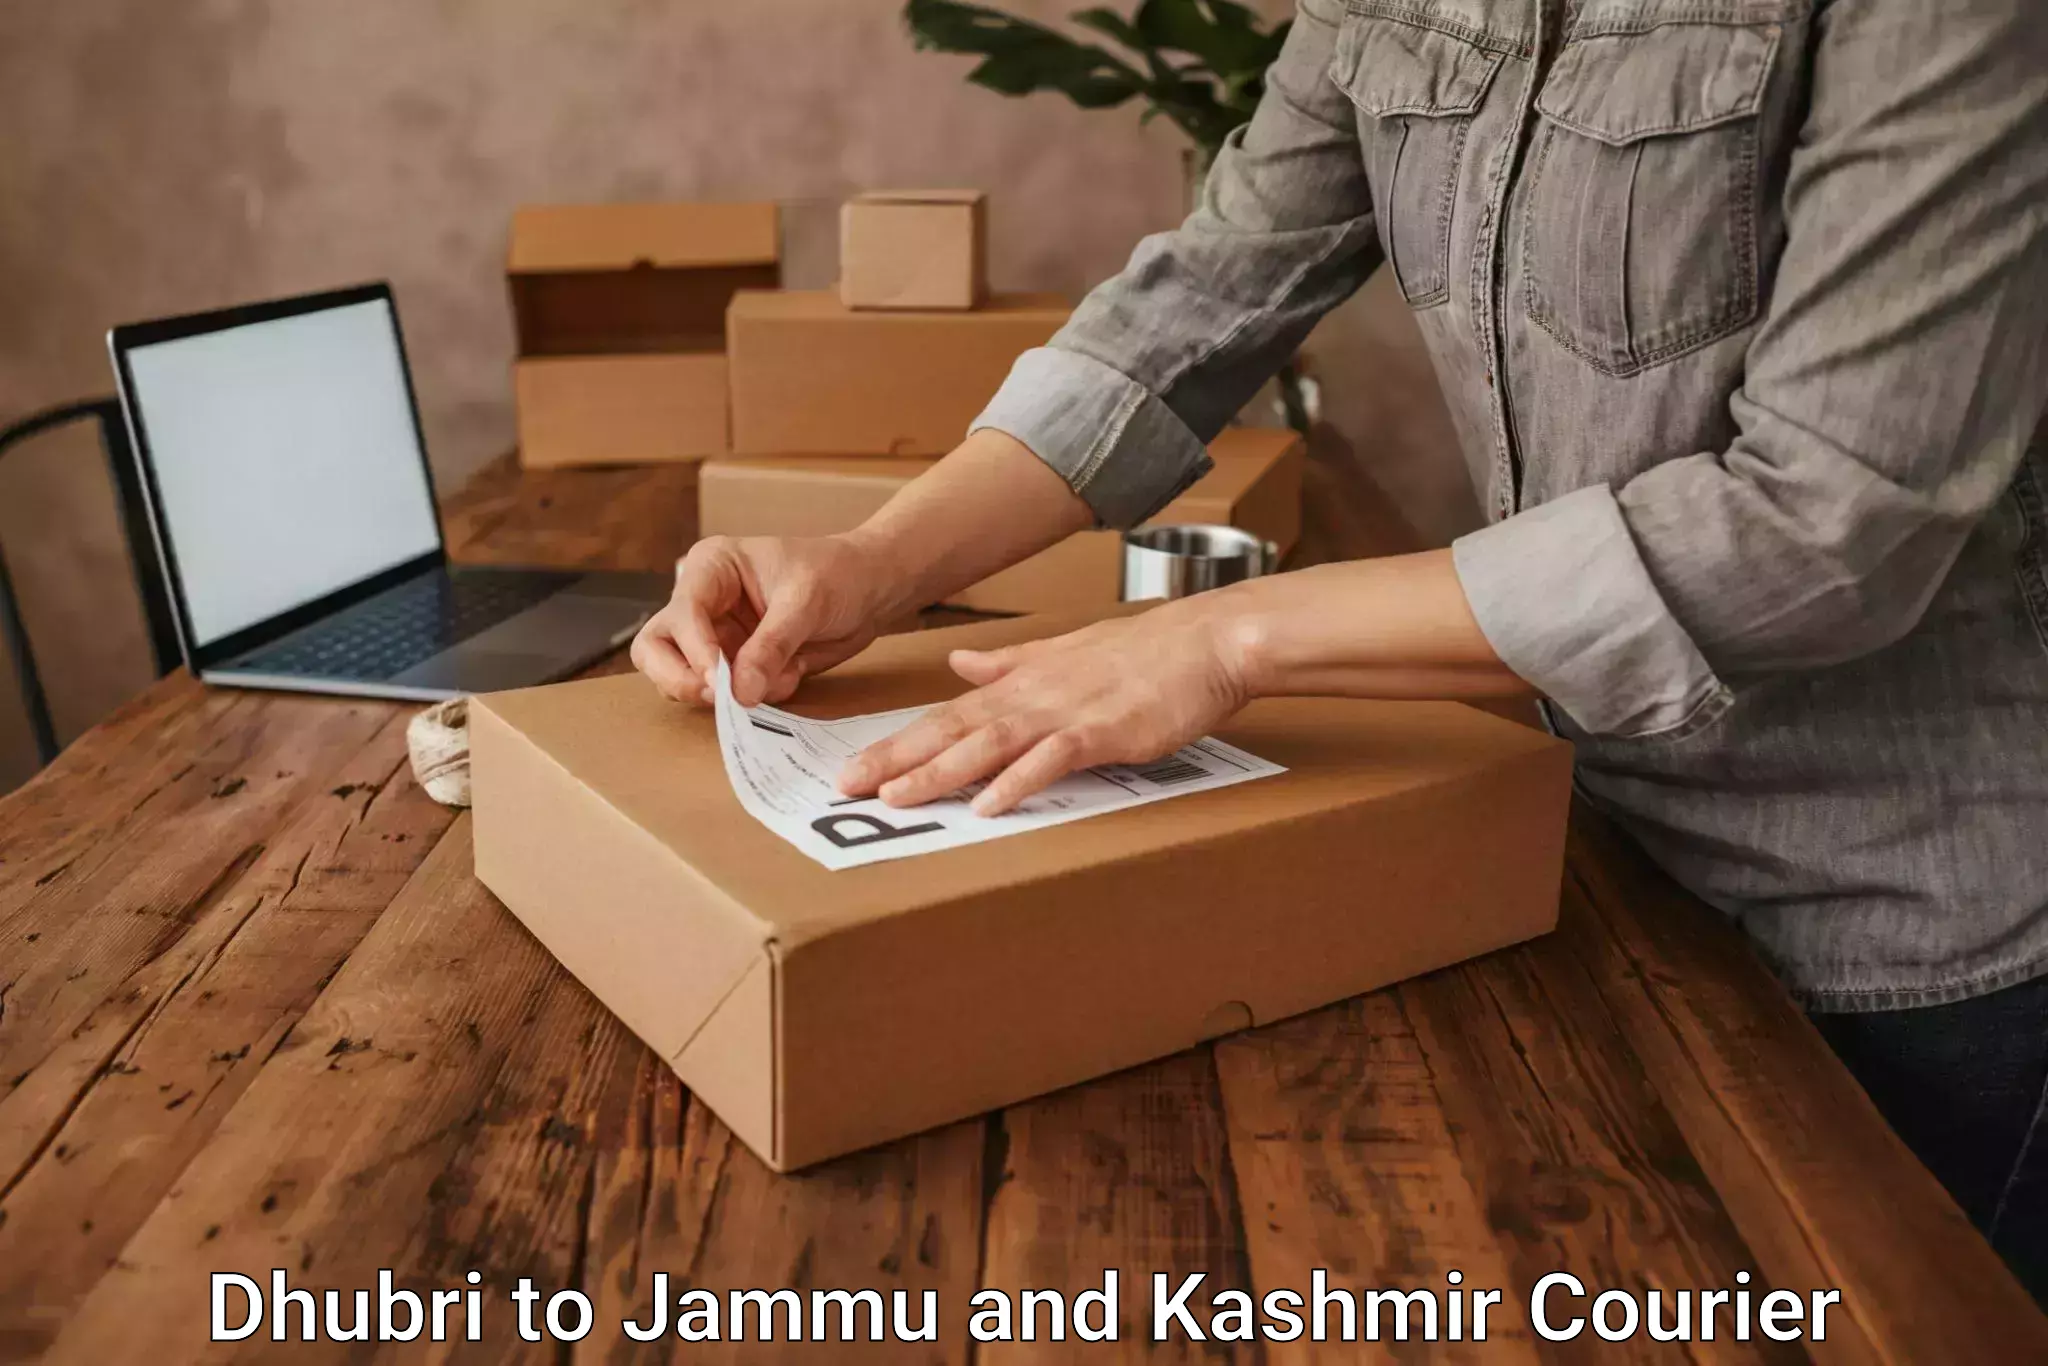 Personal courier services Dhubri to Kishtwar